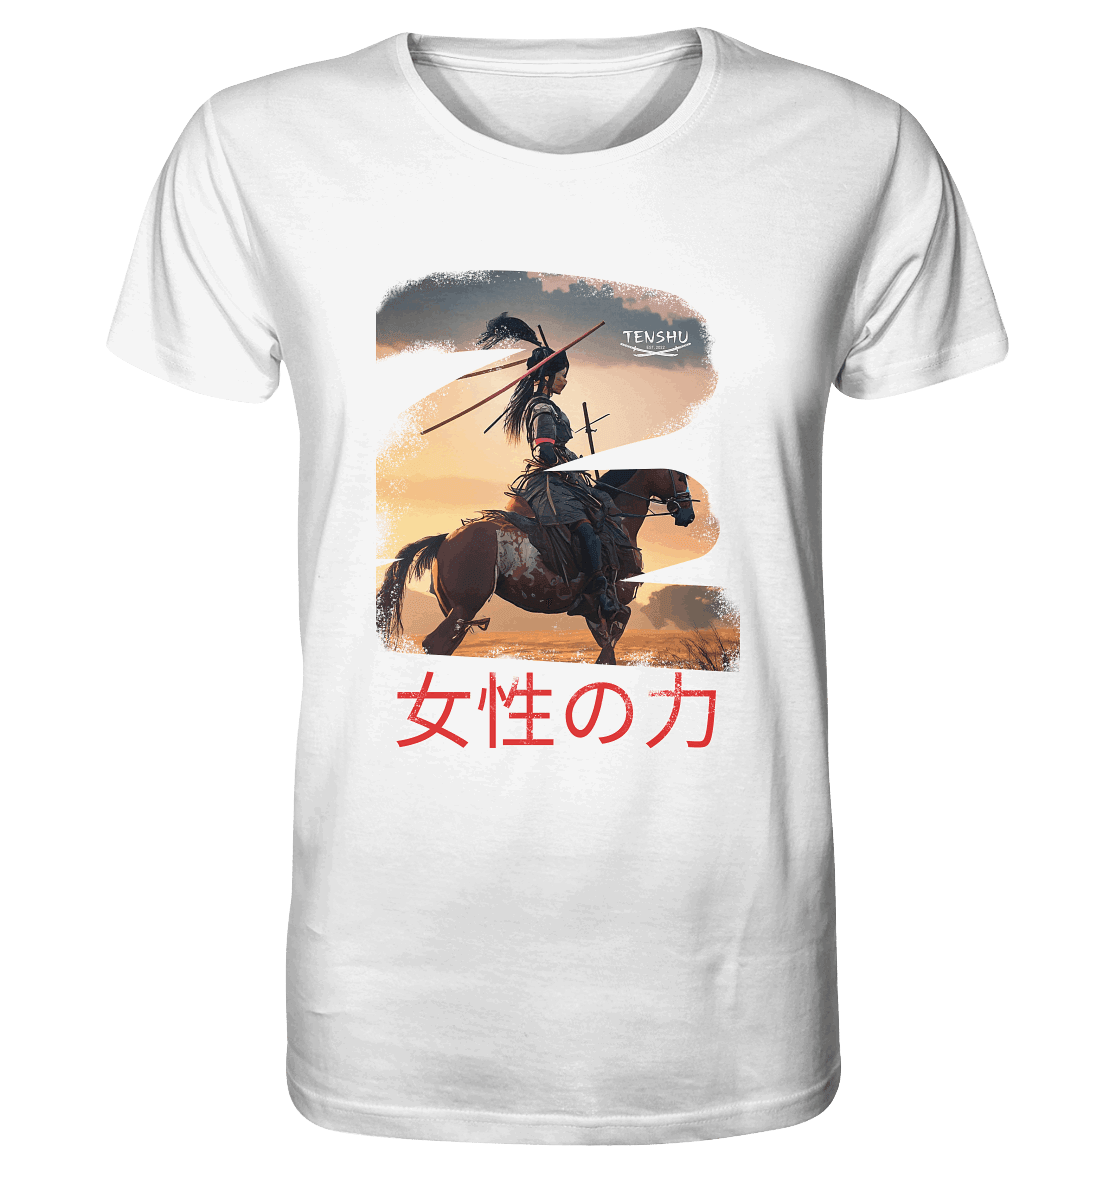 Tenshu / Die Macht der Frauen - Organic Shirt